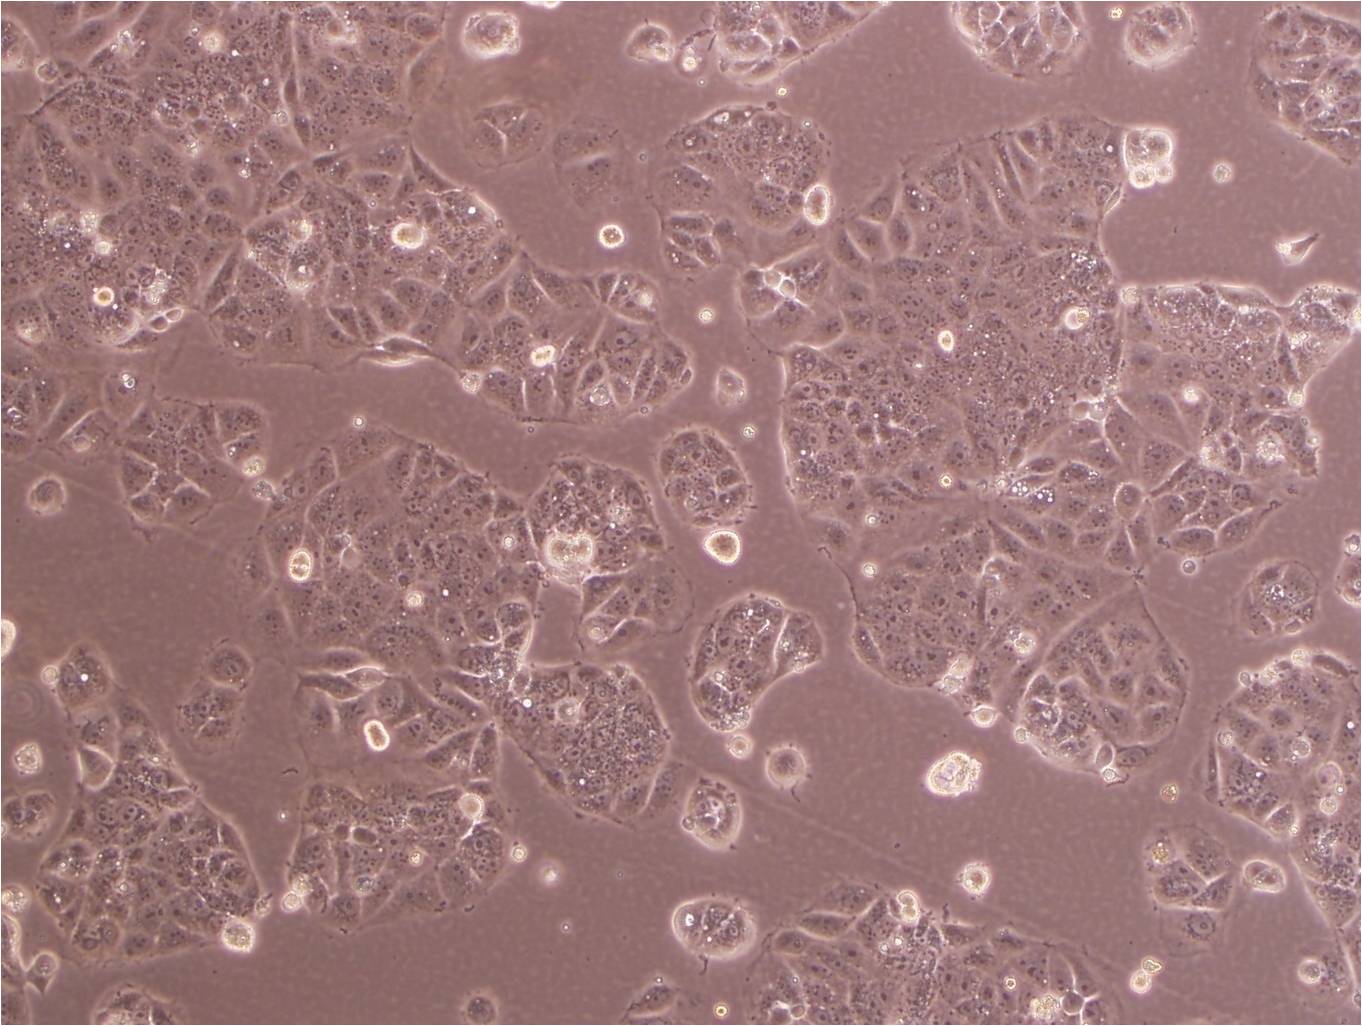 SN4741 epithelioid cells小鼠多巴胺能神经细胞系,SN4741 epithelioid cells